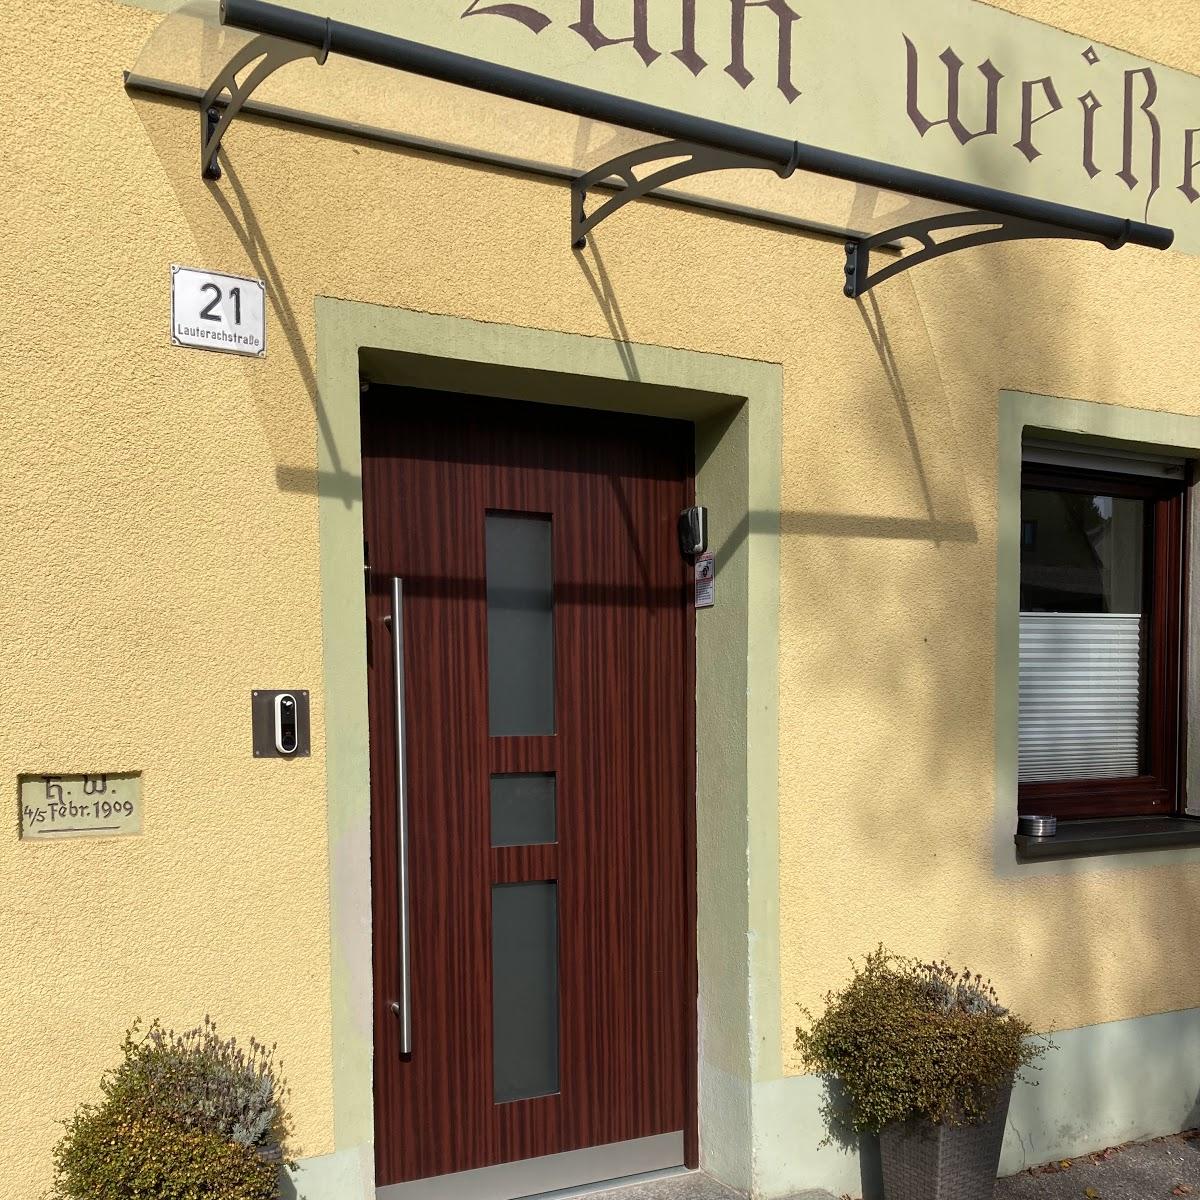 Restaurant "Pension zum weißen Rössl" in Lauterhofen